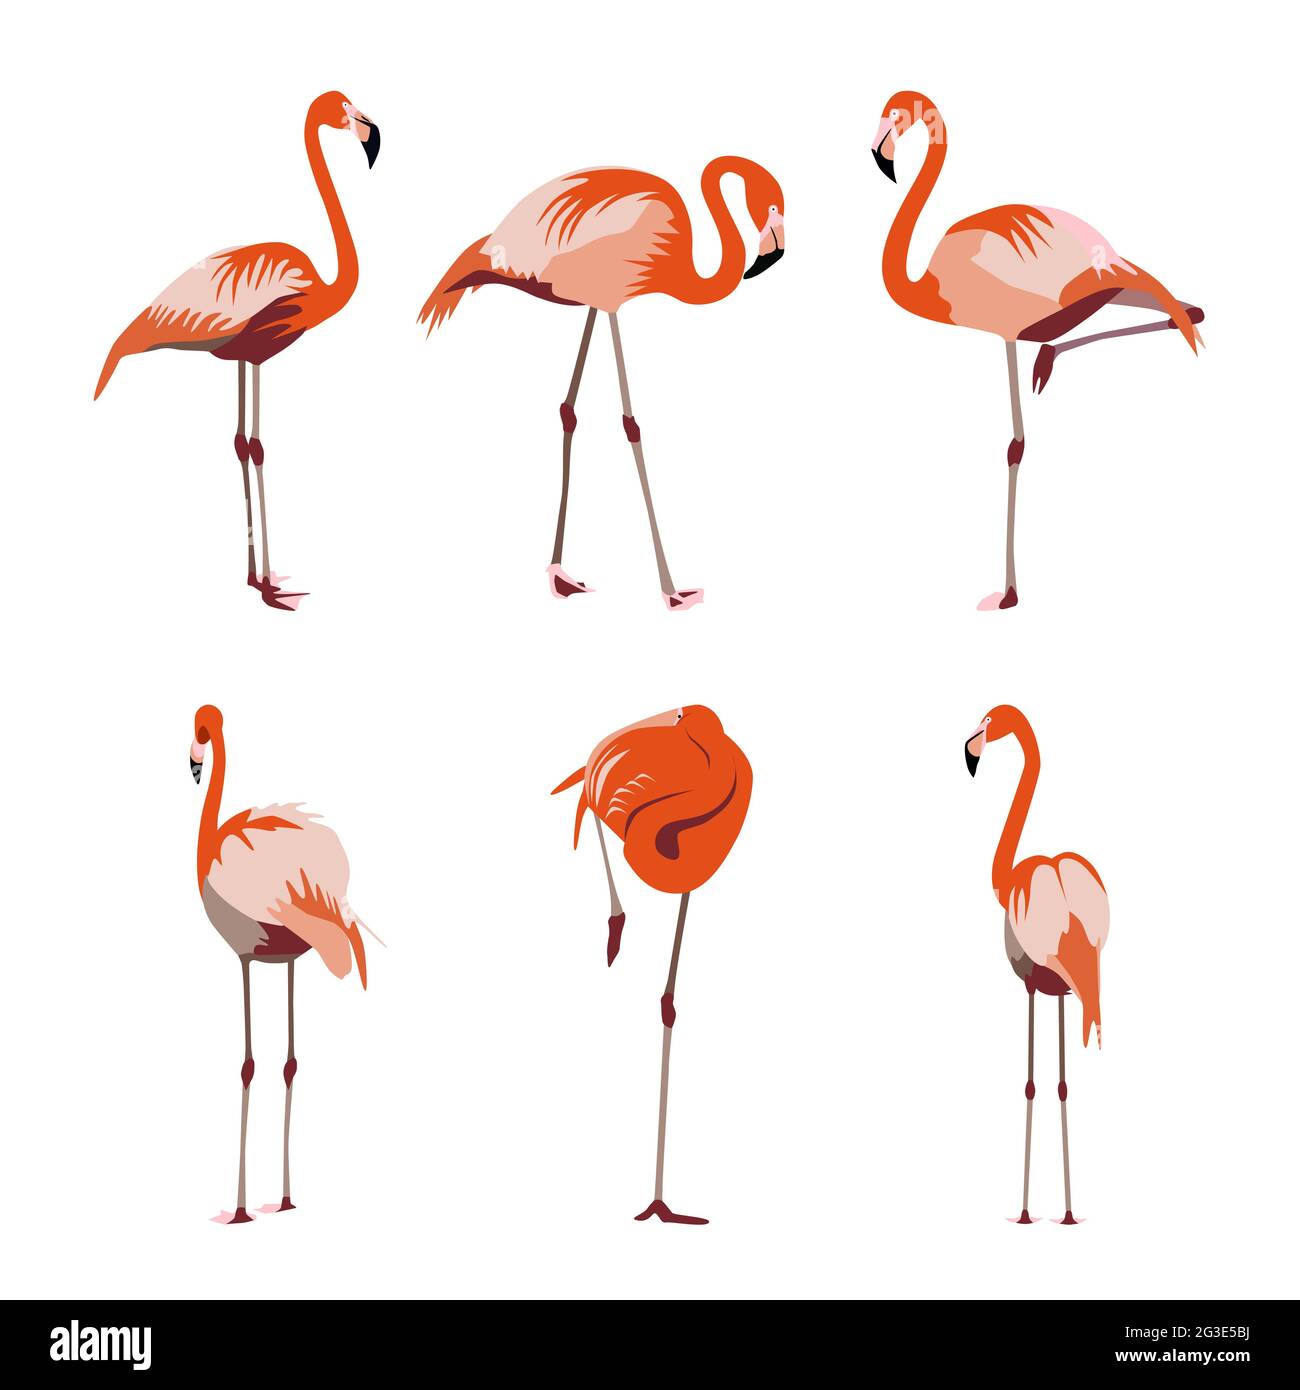 Orangene rot-gelbe und rosa Flamingo-Set-Vektor-Illustration. Exotischer tropischer Vogel in verschiedenen Posen für dekoratives Textildesign und Muster Stock Vektor